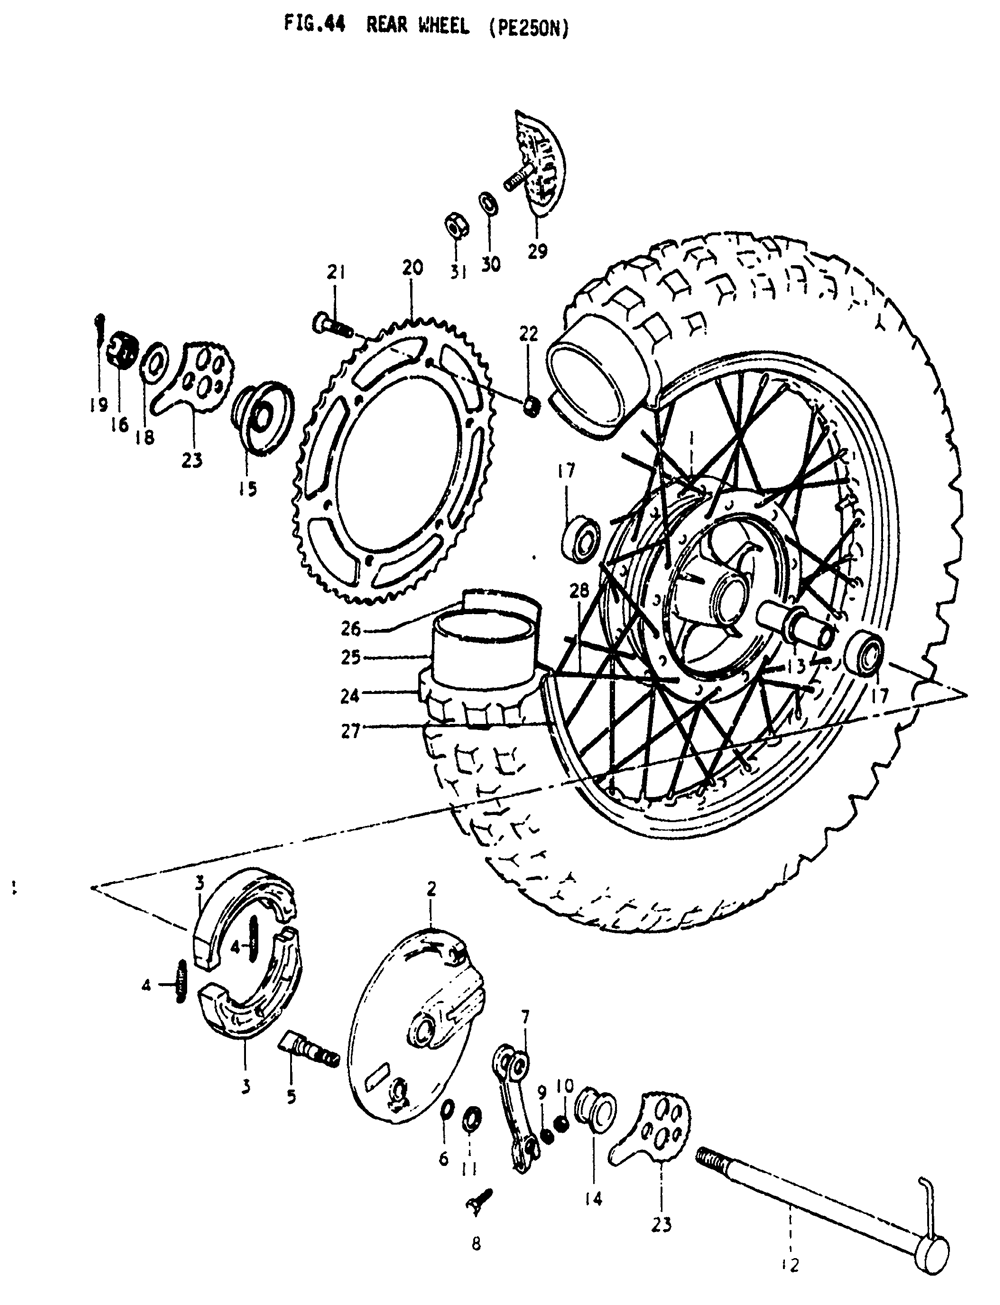 Rear wheel (pe250n)